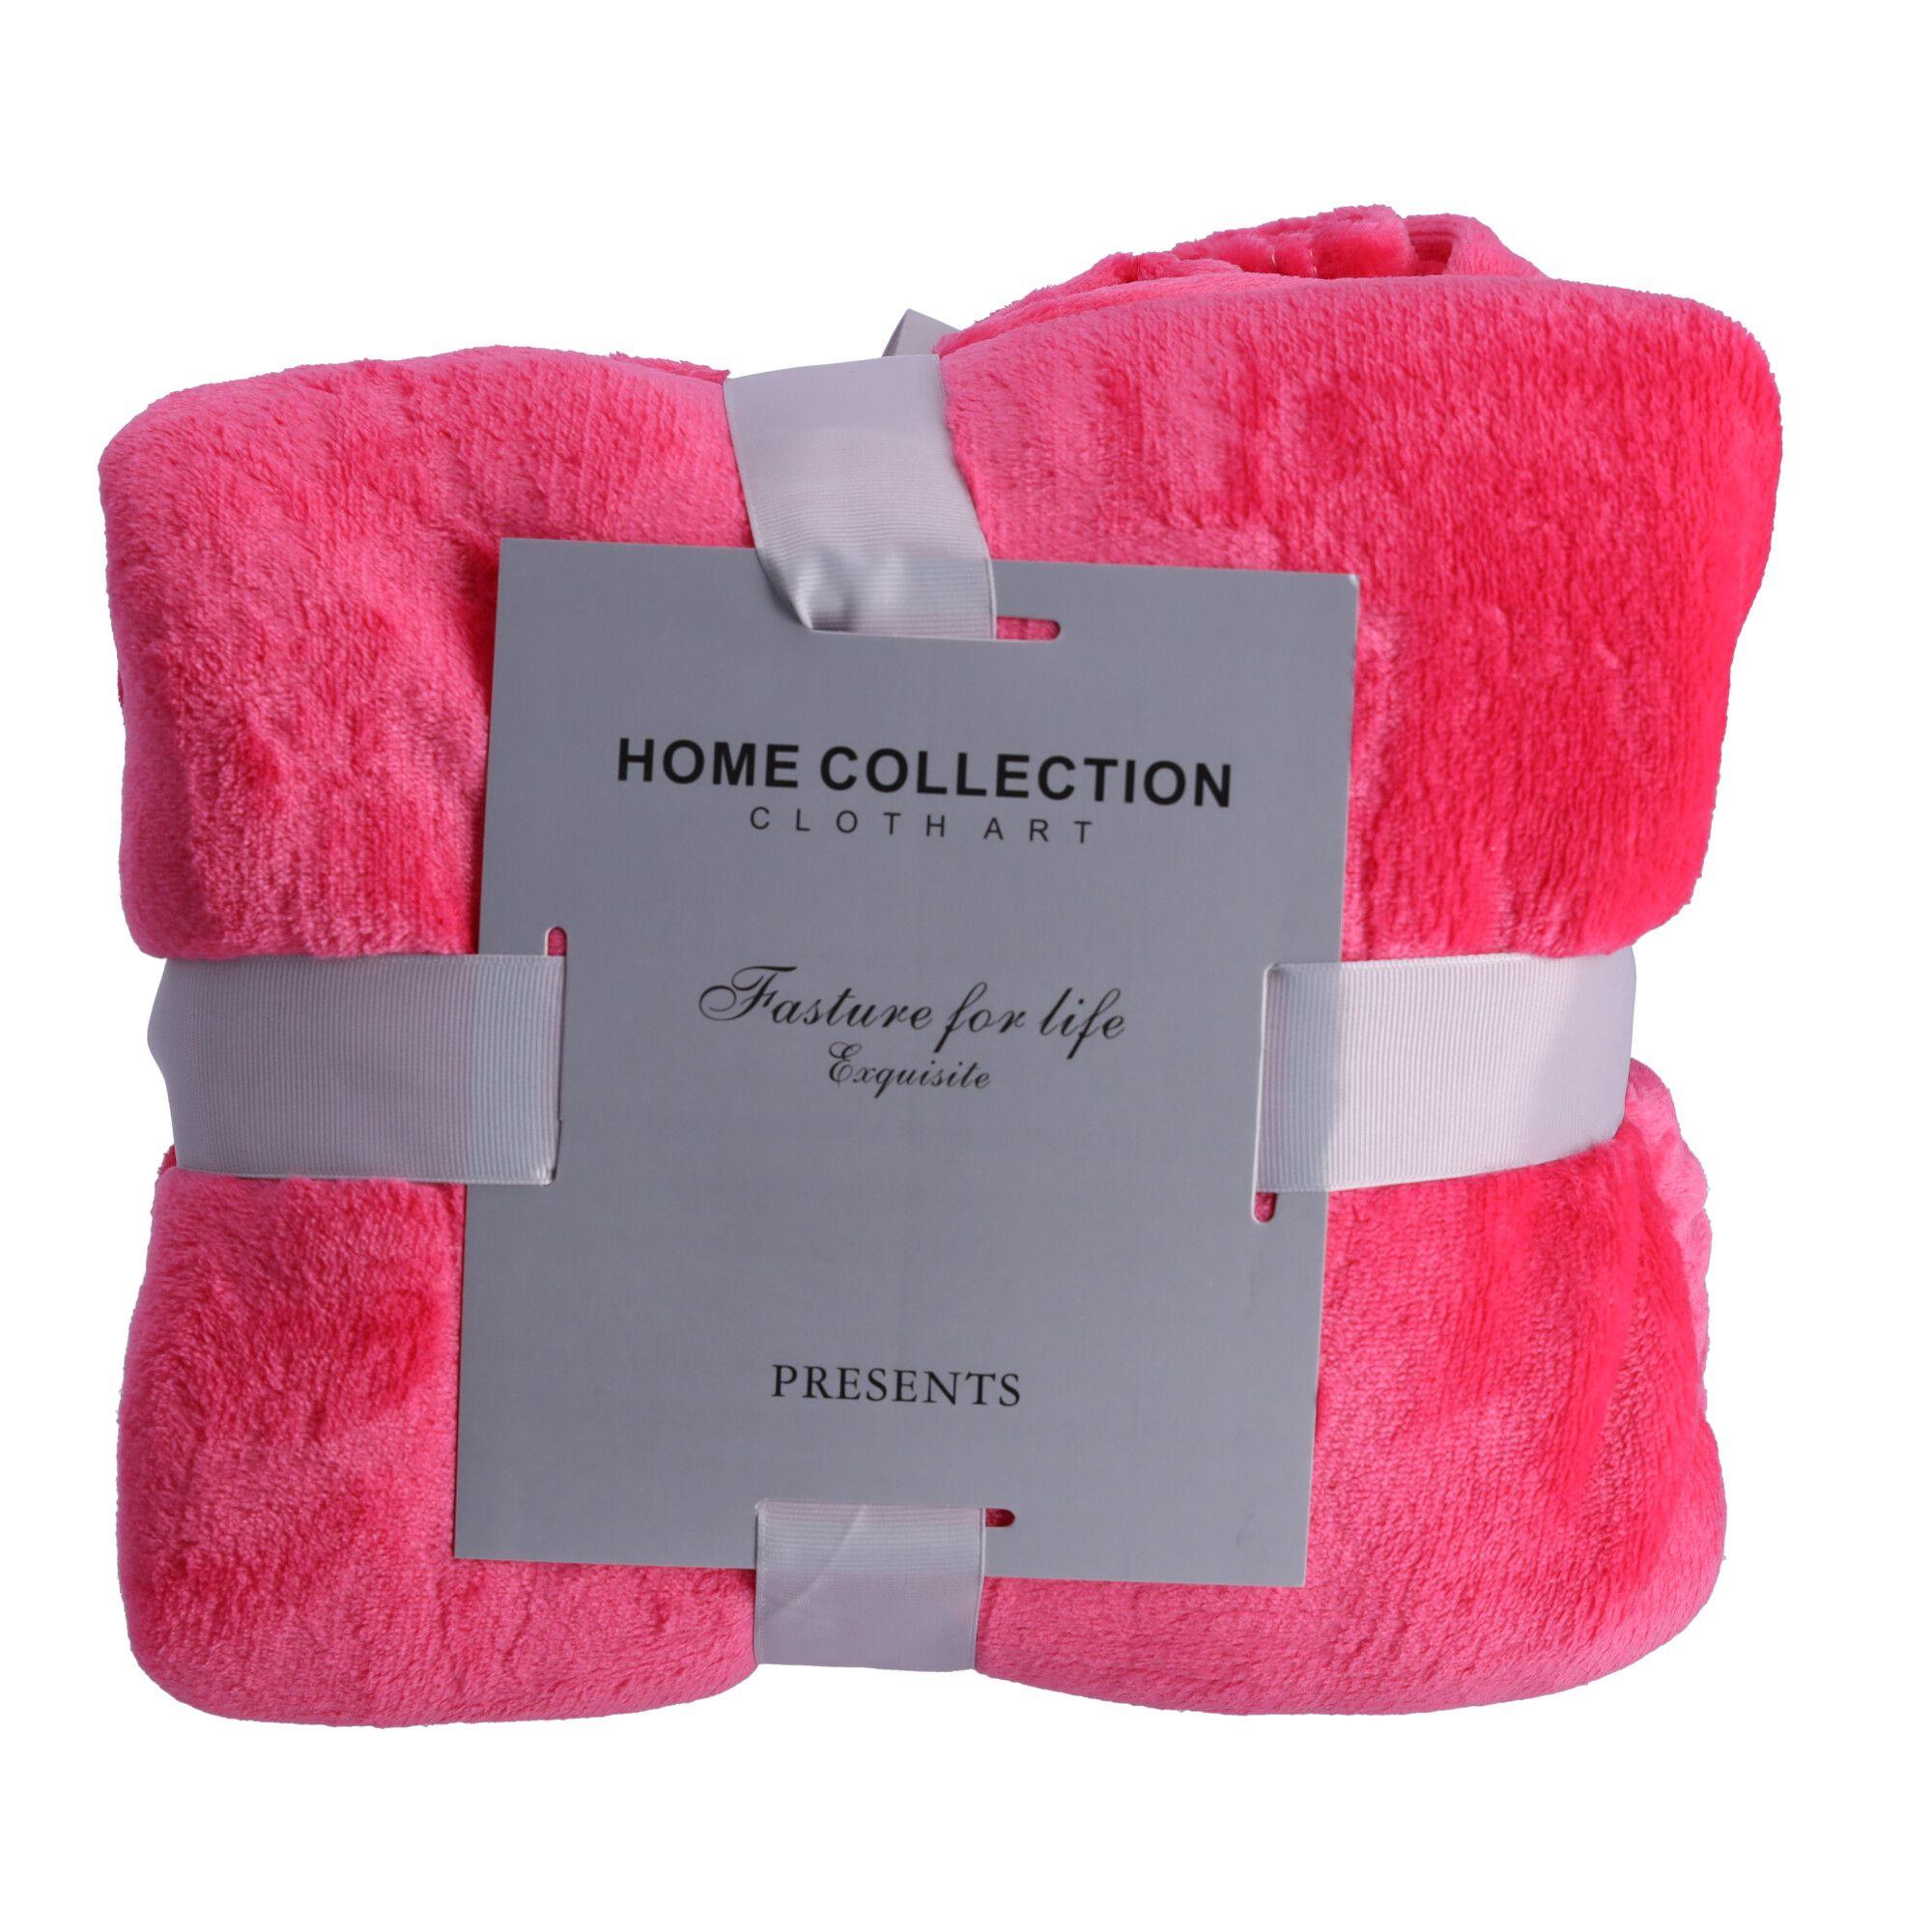 Fleece blanket, bedspread 180x200 cm - dark pink